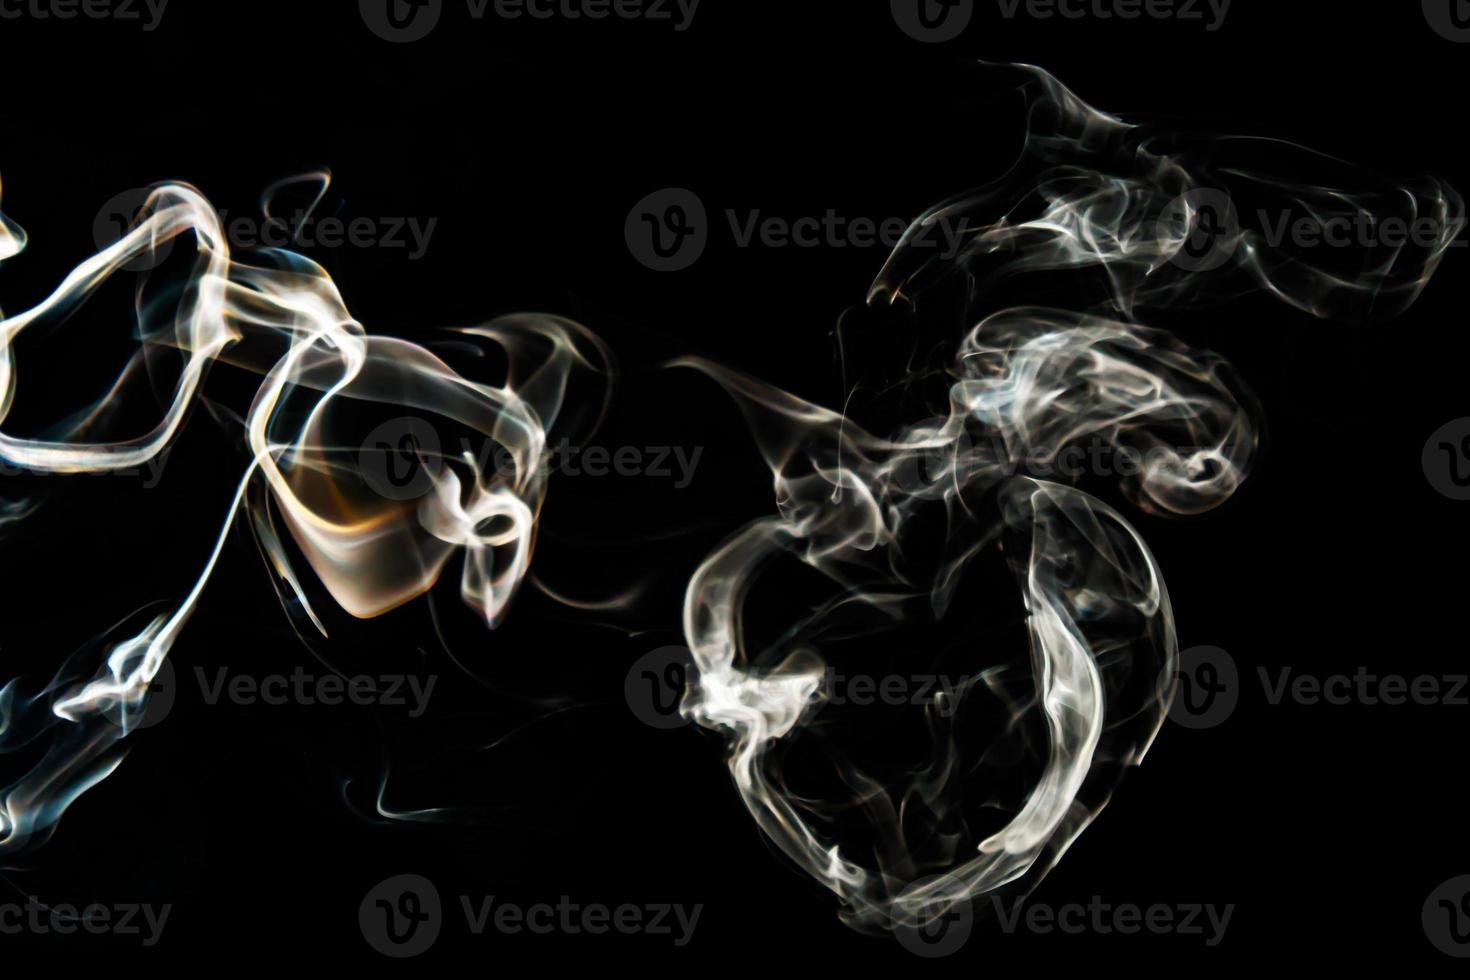 Raucheffekt Textur. isolierter Hintergrund. schwarzer und dunkler Hintergrund. Rauchiges Feuer und Nebeleffekt. foto